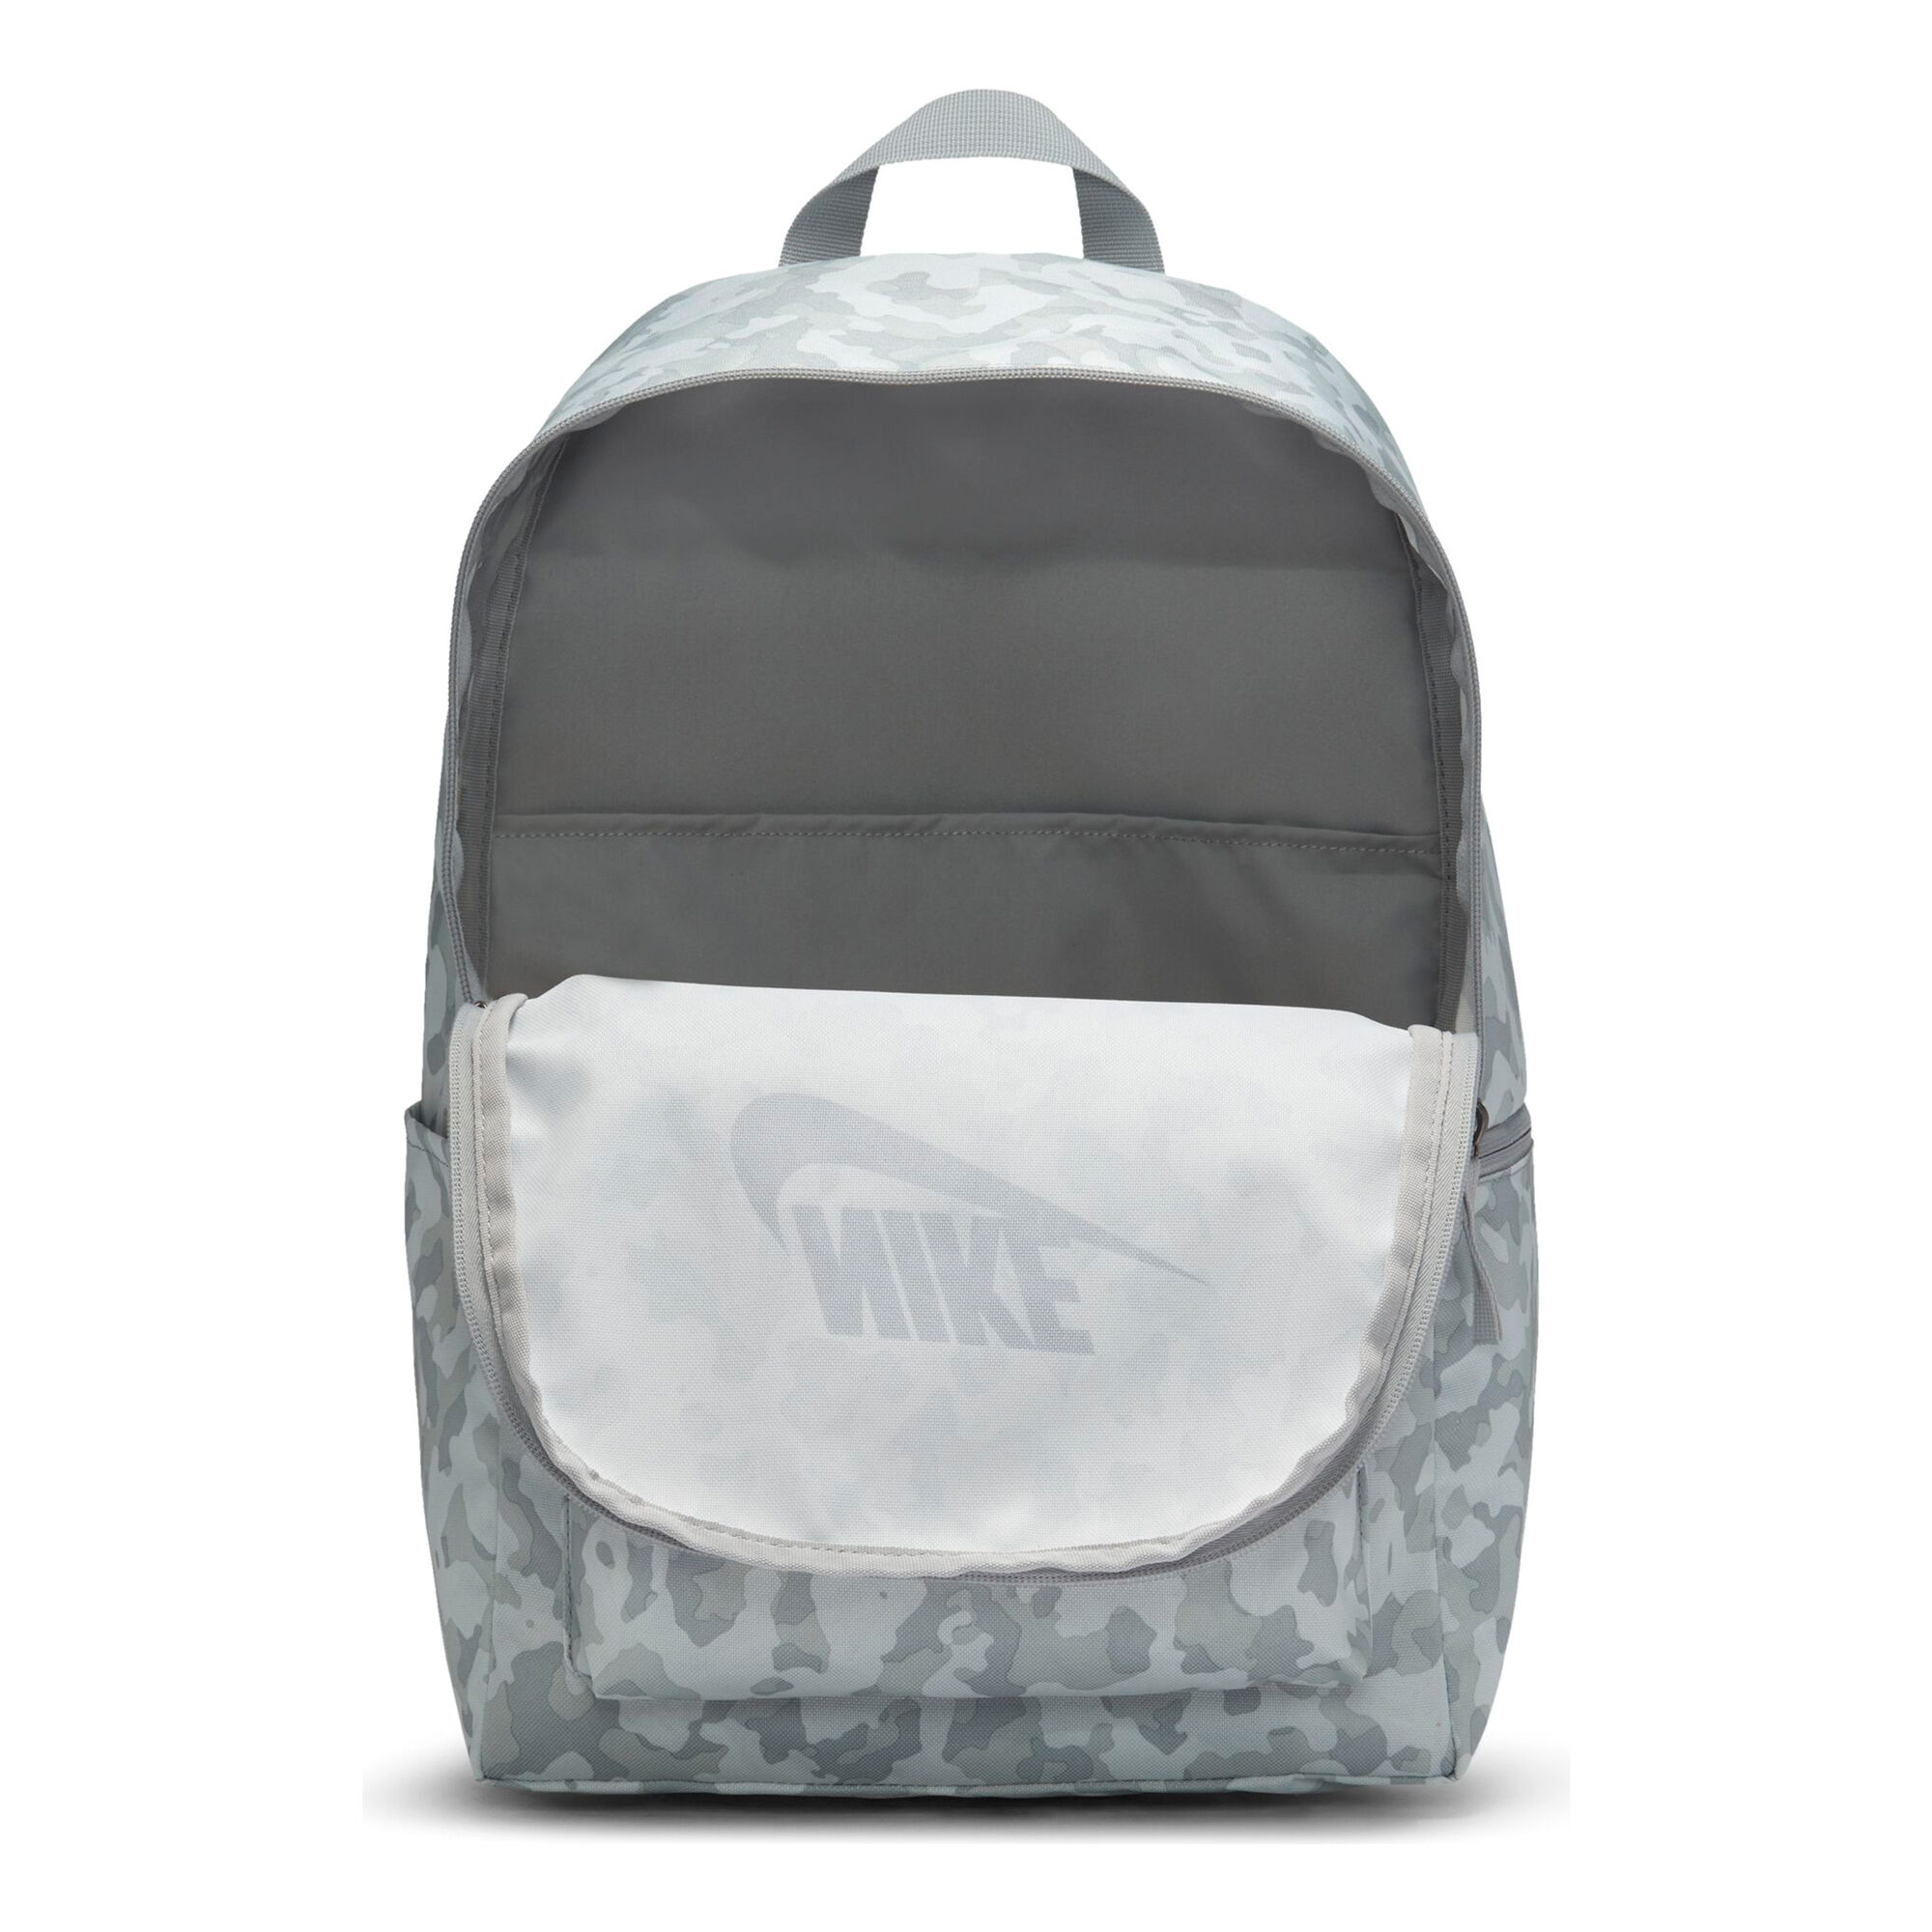 Buy Nike Heritage Backpack Grey, Black online | Tennis Point UK